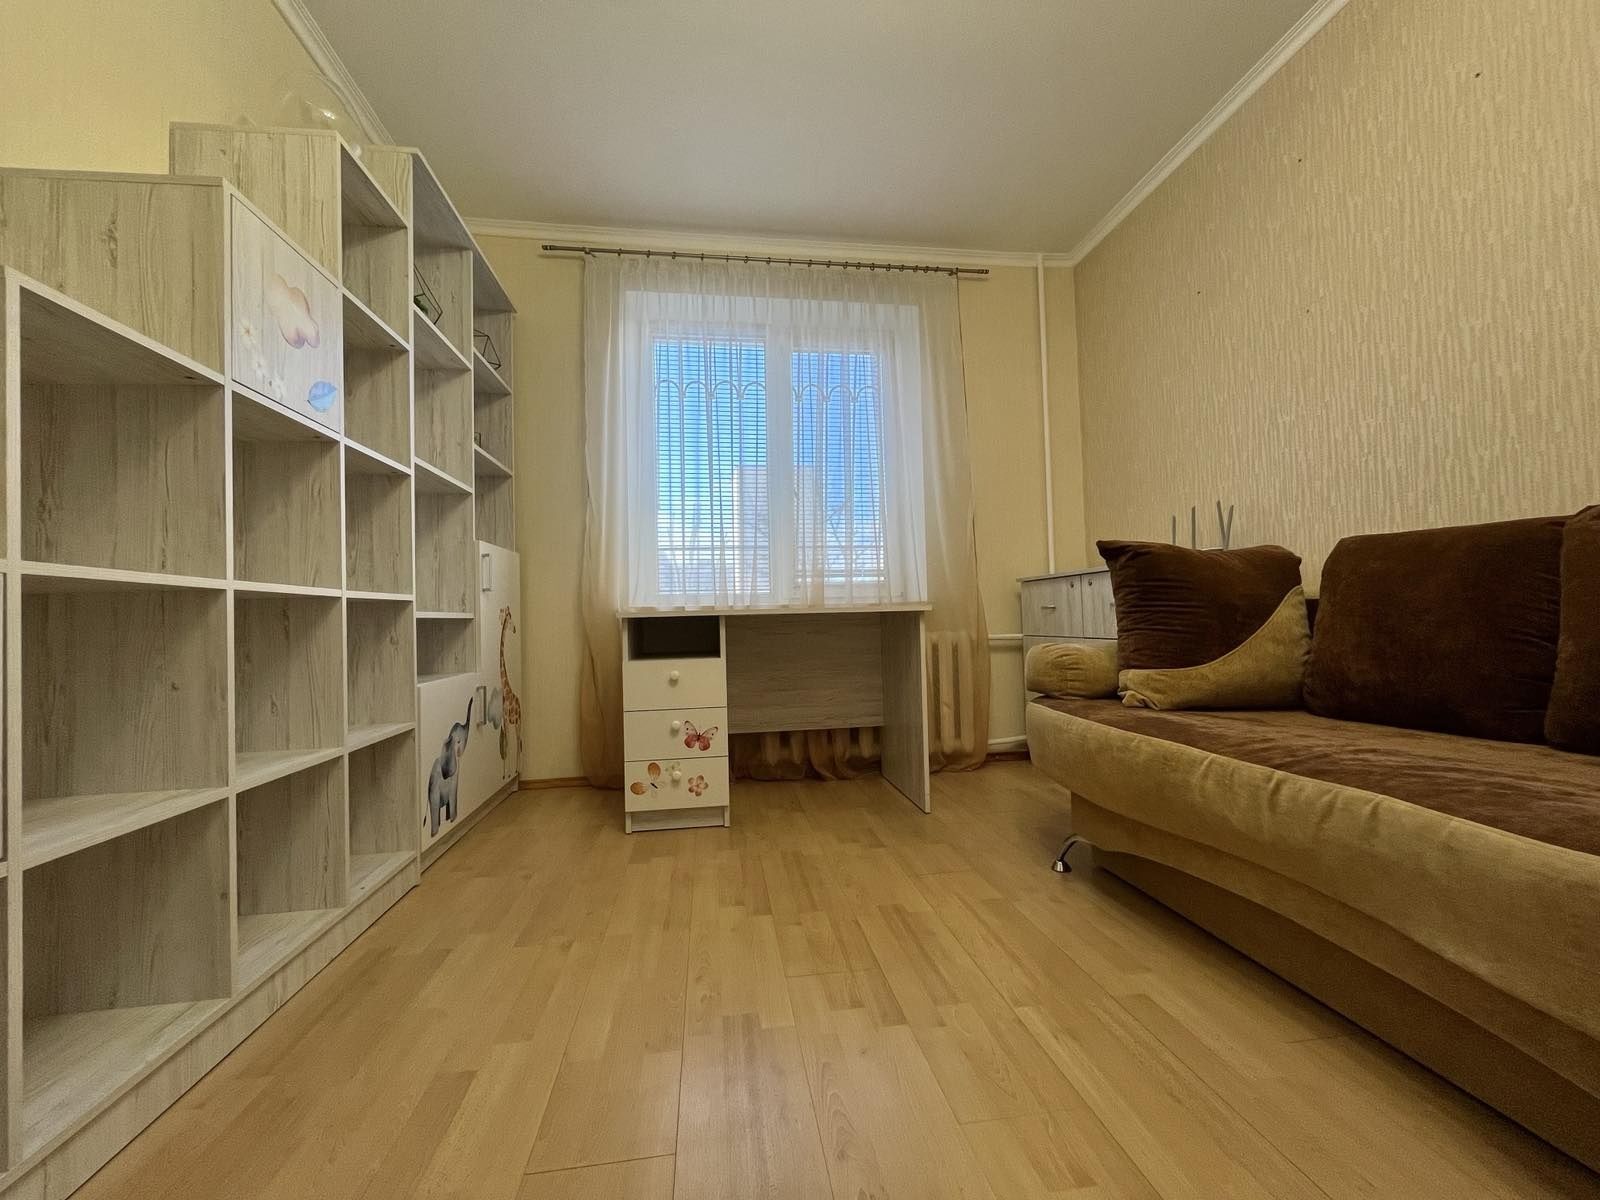 Продам 3-х кімнатну квартиру по вулиці Калинова 73.